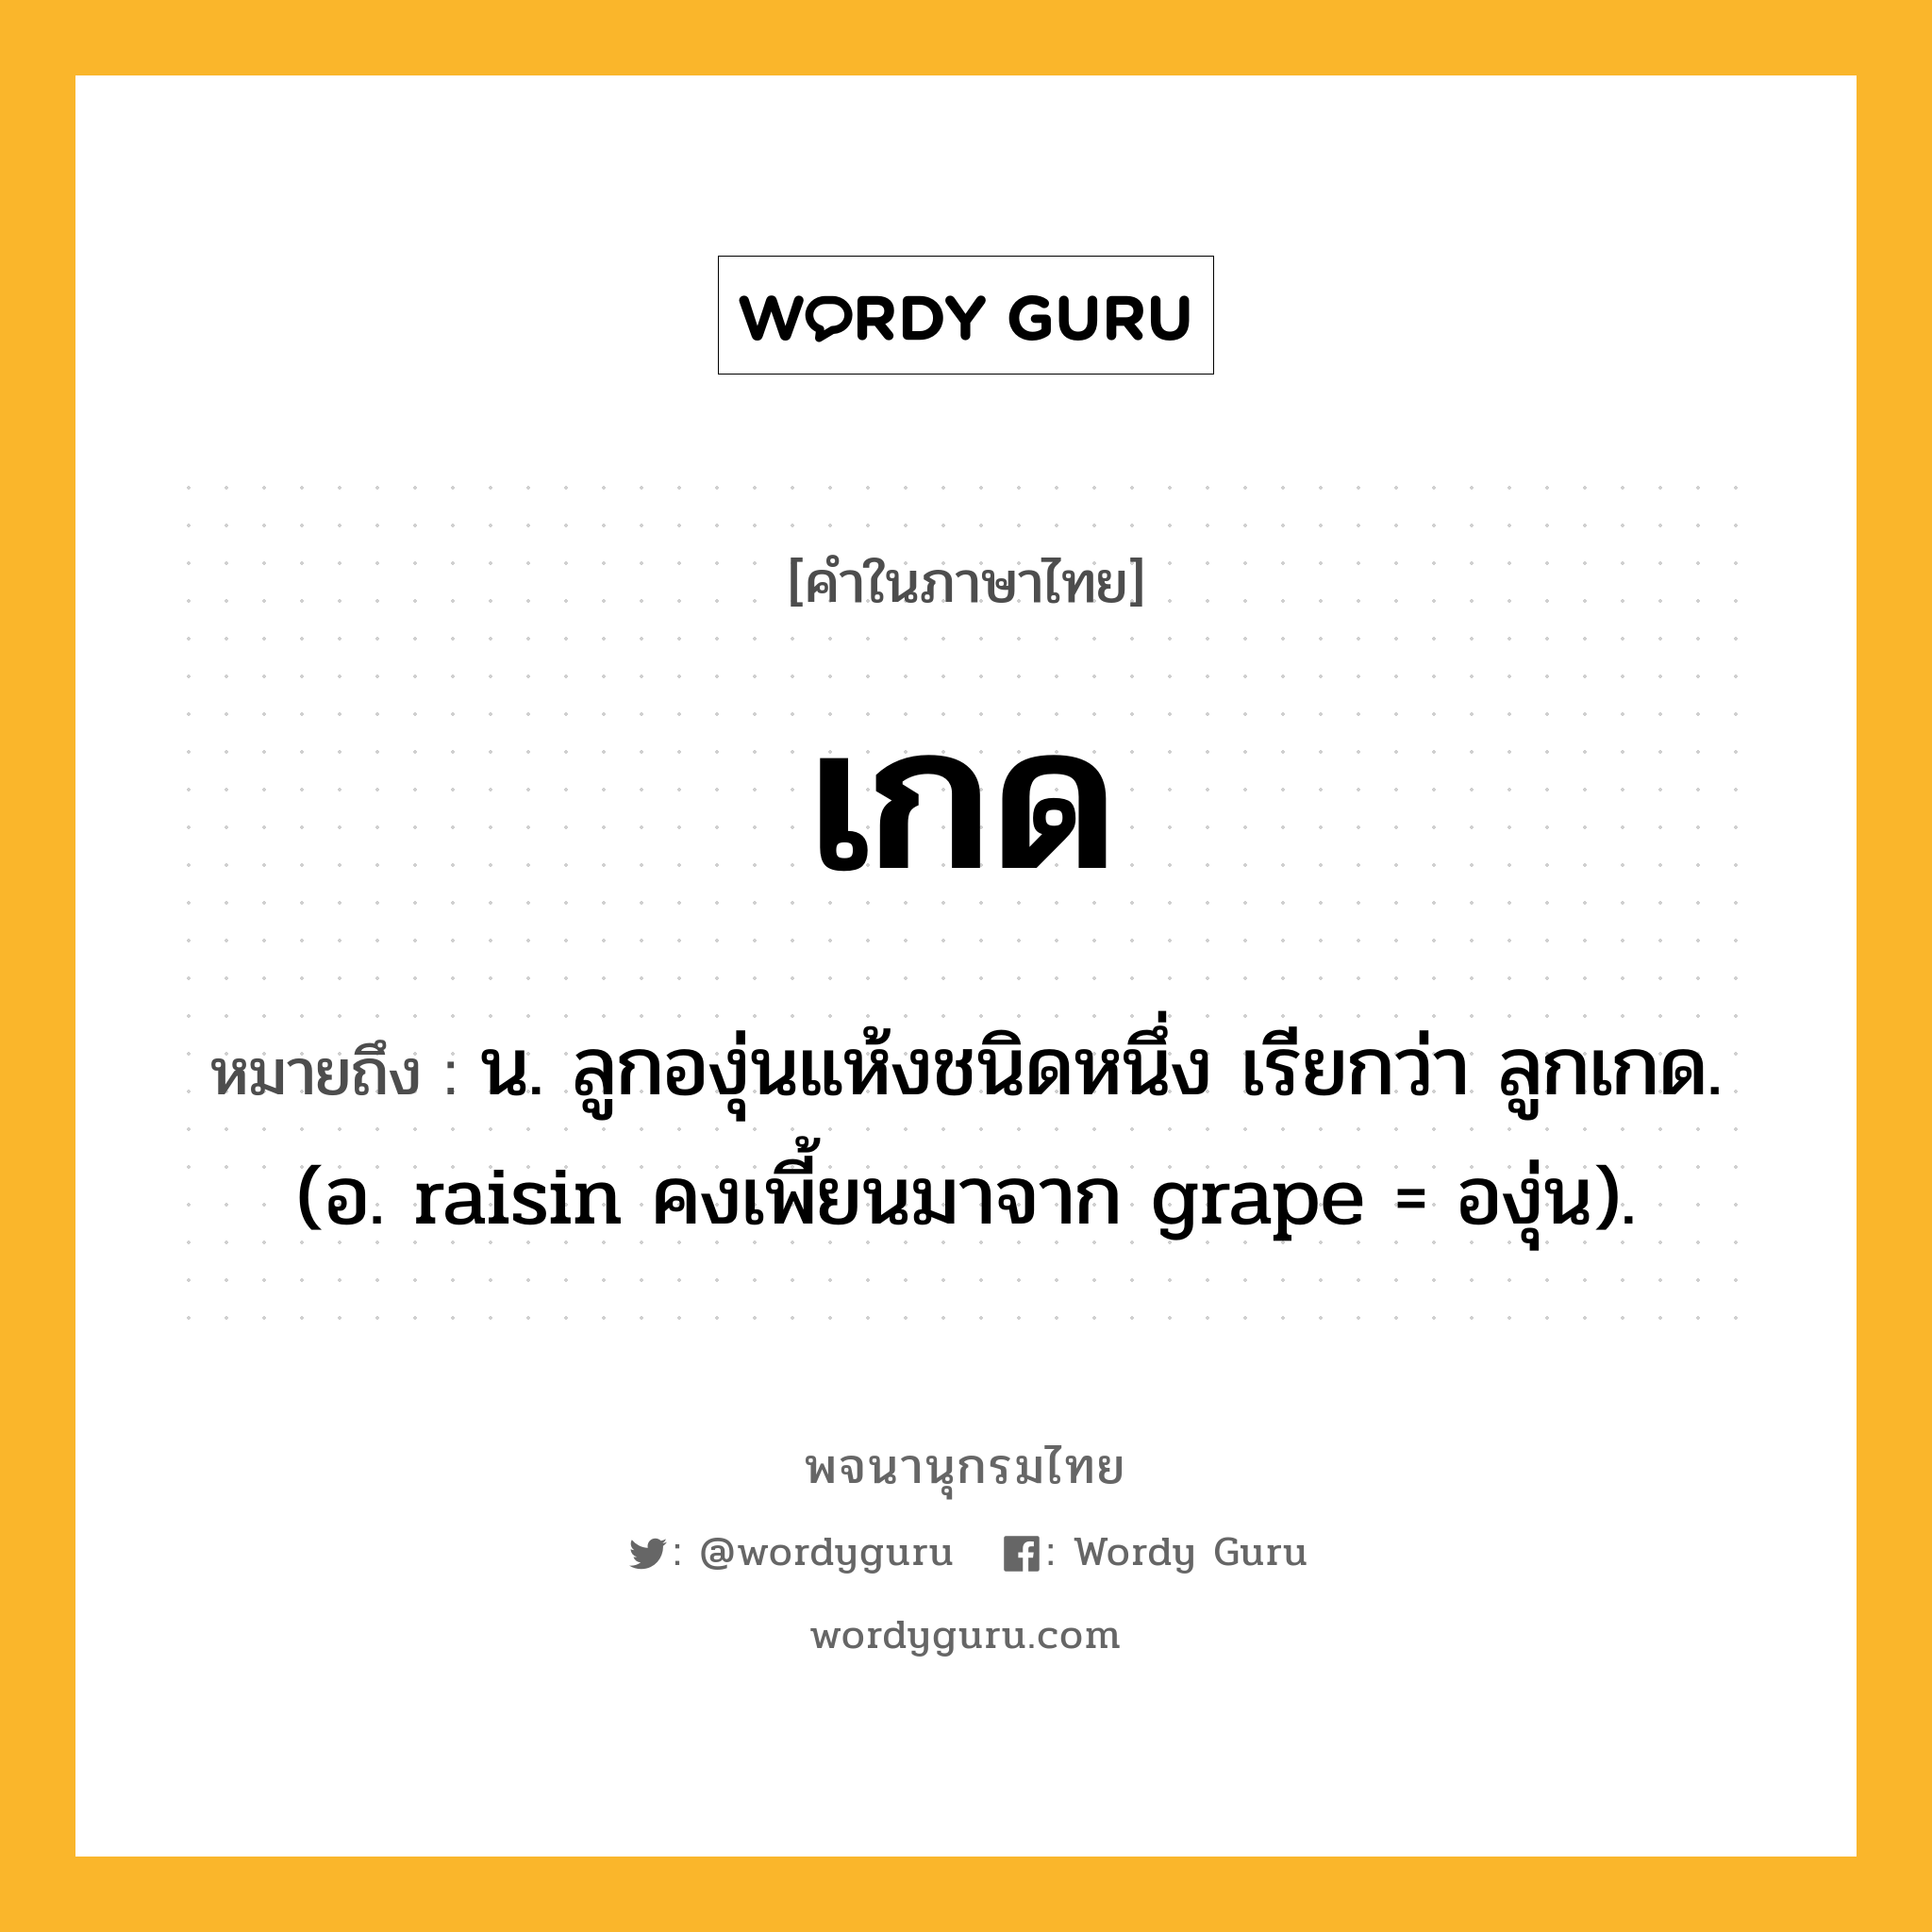 เกด ความหมาย หมายถึงอะไร?, คำในภาษาไทย เกด หมายถึง น. ลูกองุ่นแห้งชนิดหนึ่ง เรียกว่า ลูกเกด. (อ. raisin คงเพี้ยนมาจาก grape = องุ่น).